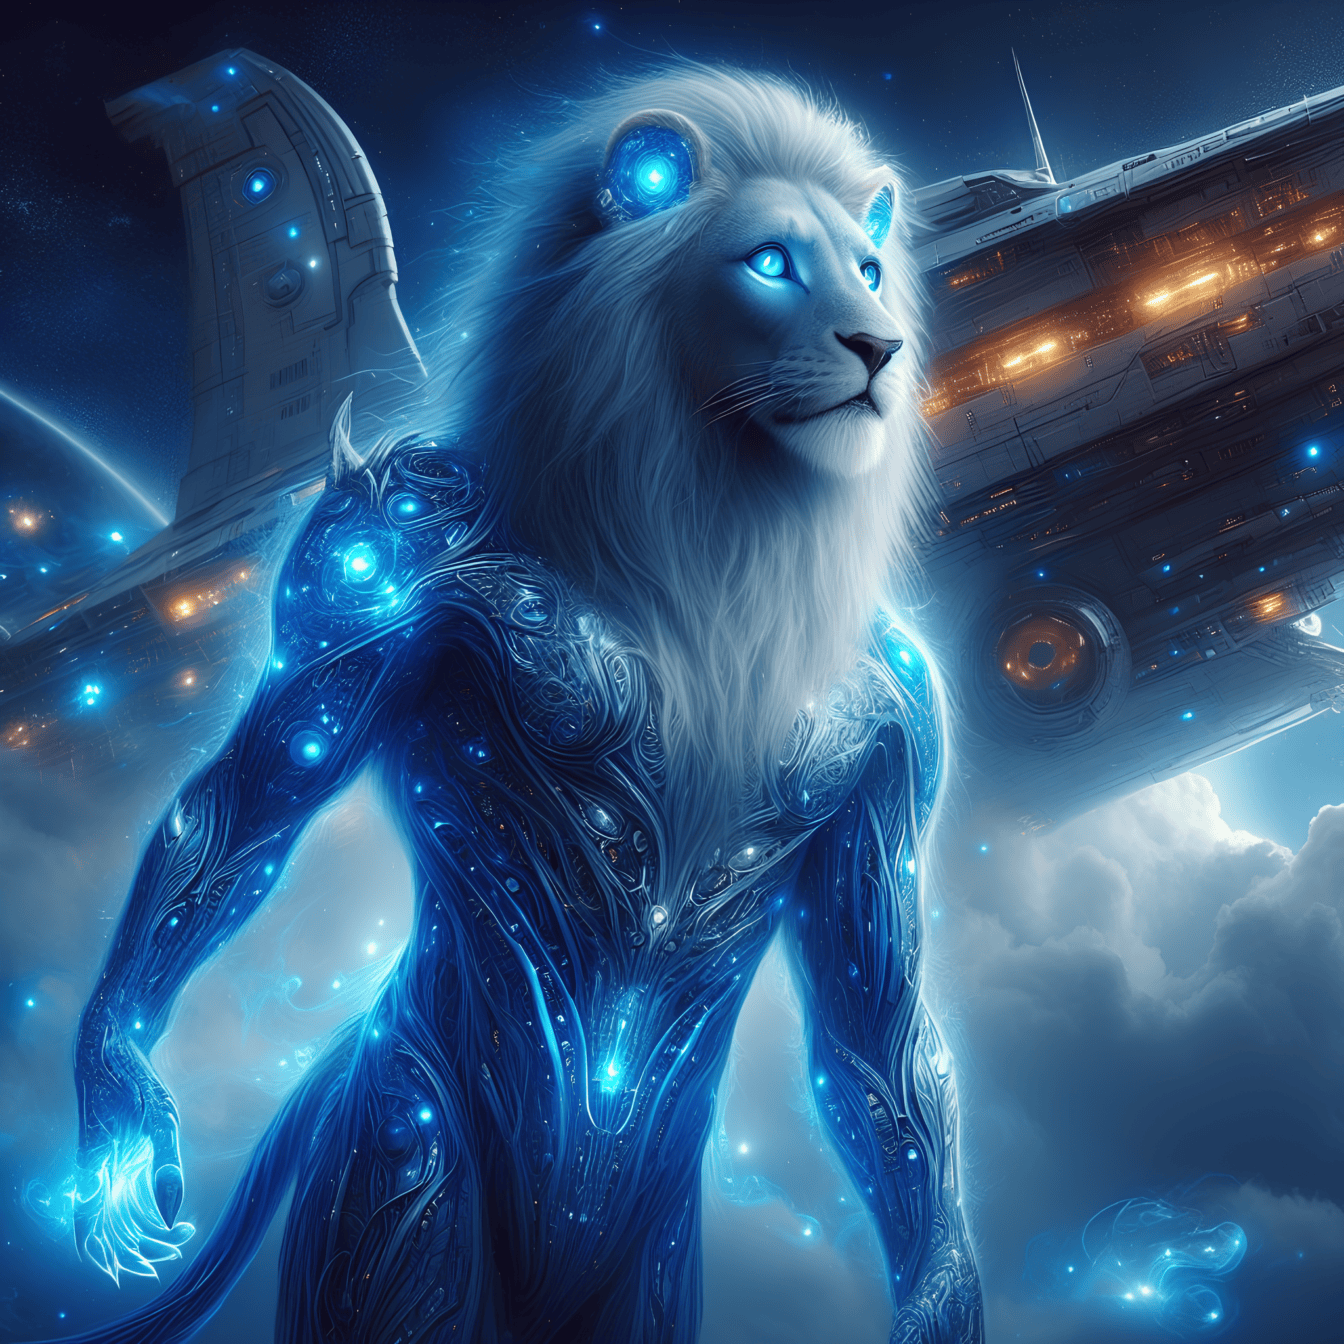 Um leão-alienígena azul escuro, um humanoide-ciborgue extraterrestre com olhos brilhantes